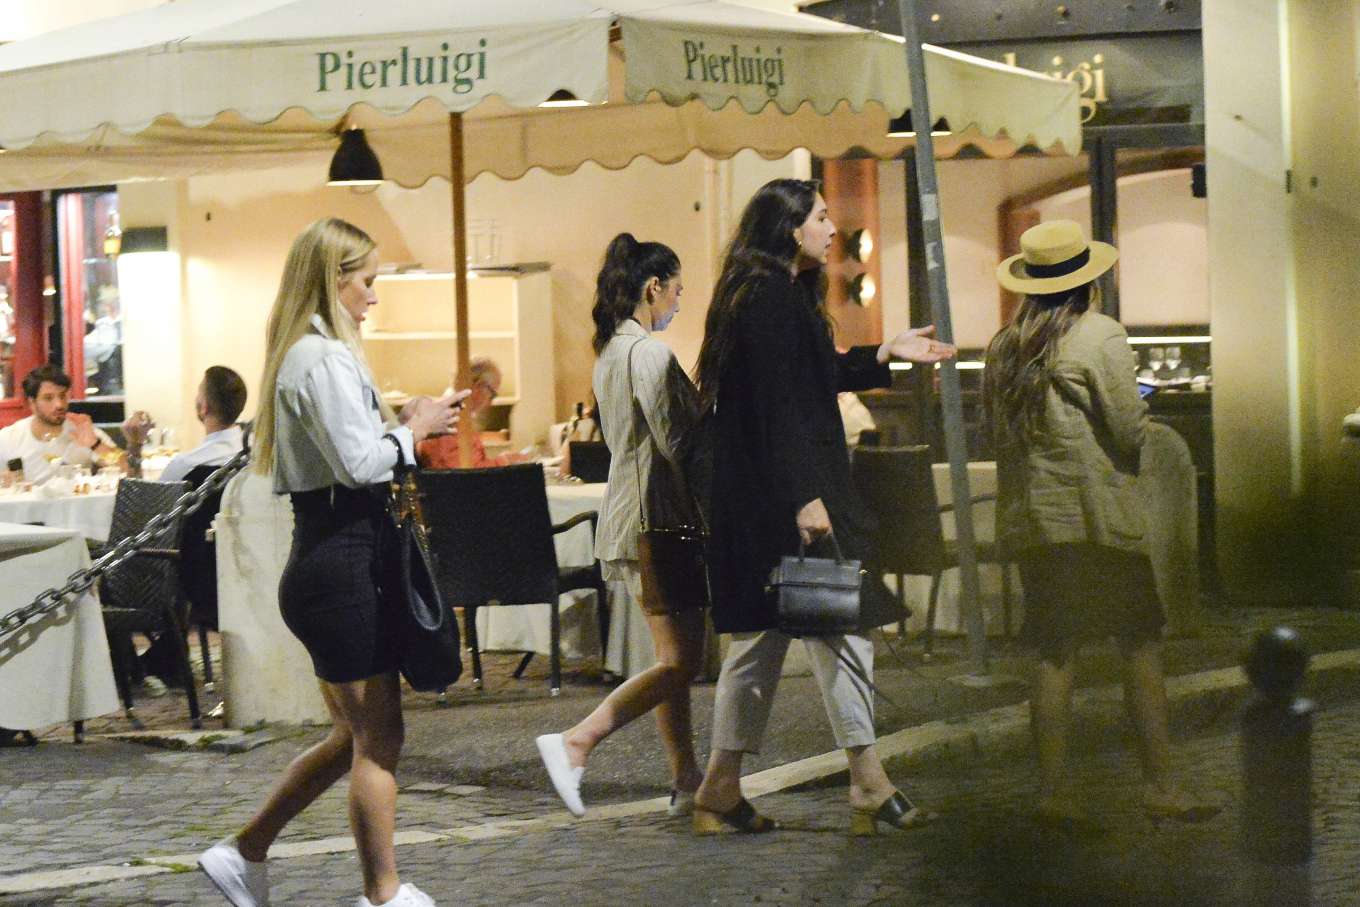 Olivia Munn â€“ Out for dinner at Pierluigi in Rome